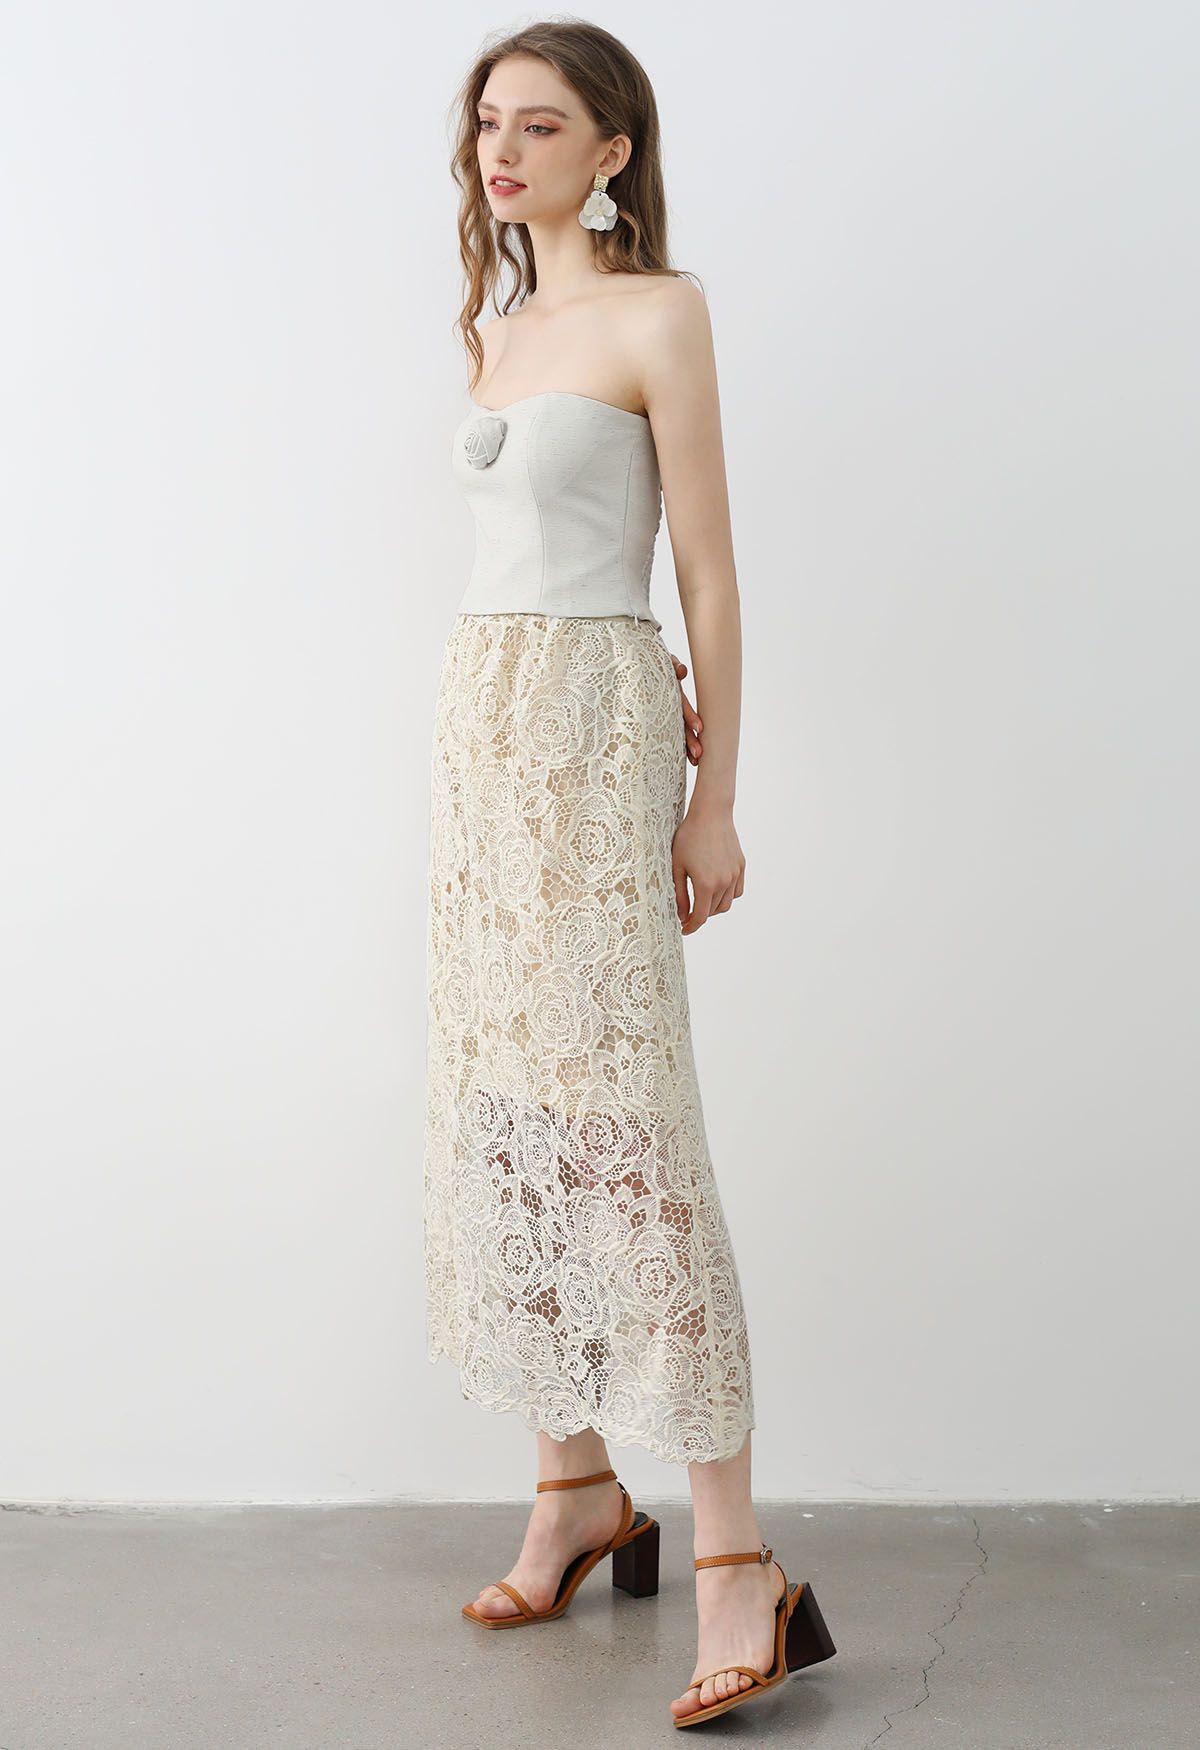 Exquisite Rose Cutwork Lace Maxi Skirt in Cream